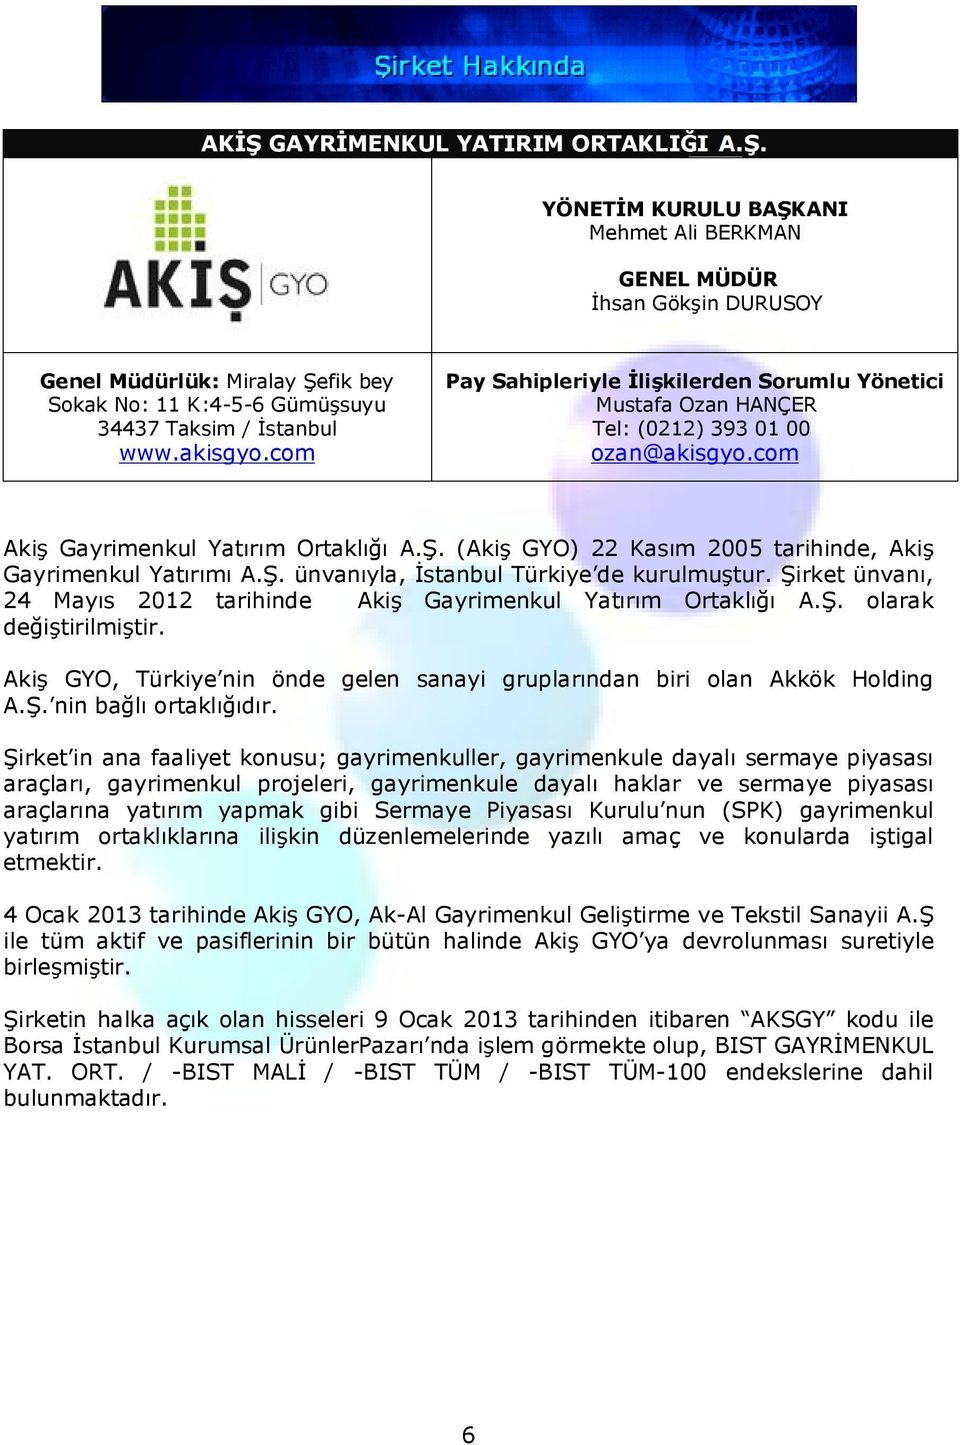 (Akiş GYO) 22 Kasım 2005 tarihinde, Akiş Gayrimenkul Yatırımı A.Ş. ünvanıyla, İstanbul Türkiye de kurulmuştur. Şirket ünvanı, 24 Mayıs 2012 tarihinde Akiş Gayrimenkul Yatırım Ortaklığı A.Ş. olarak değiştirilmiştir.